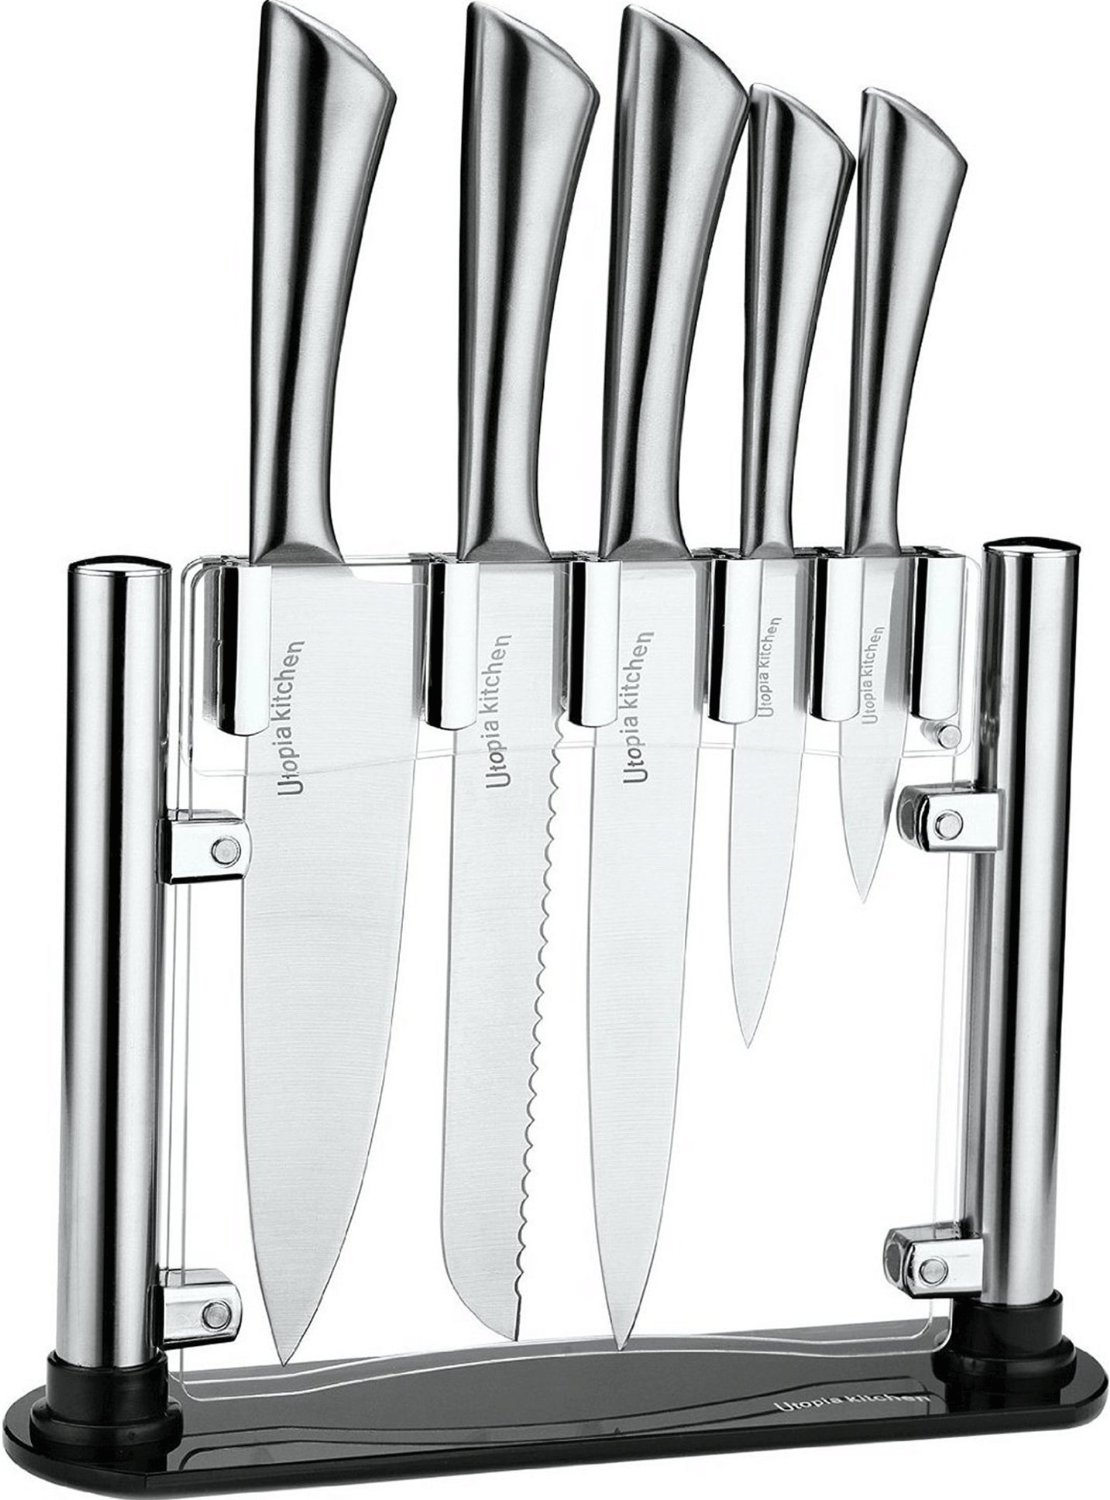 highest rated kitchen knife sets